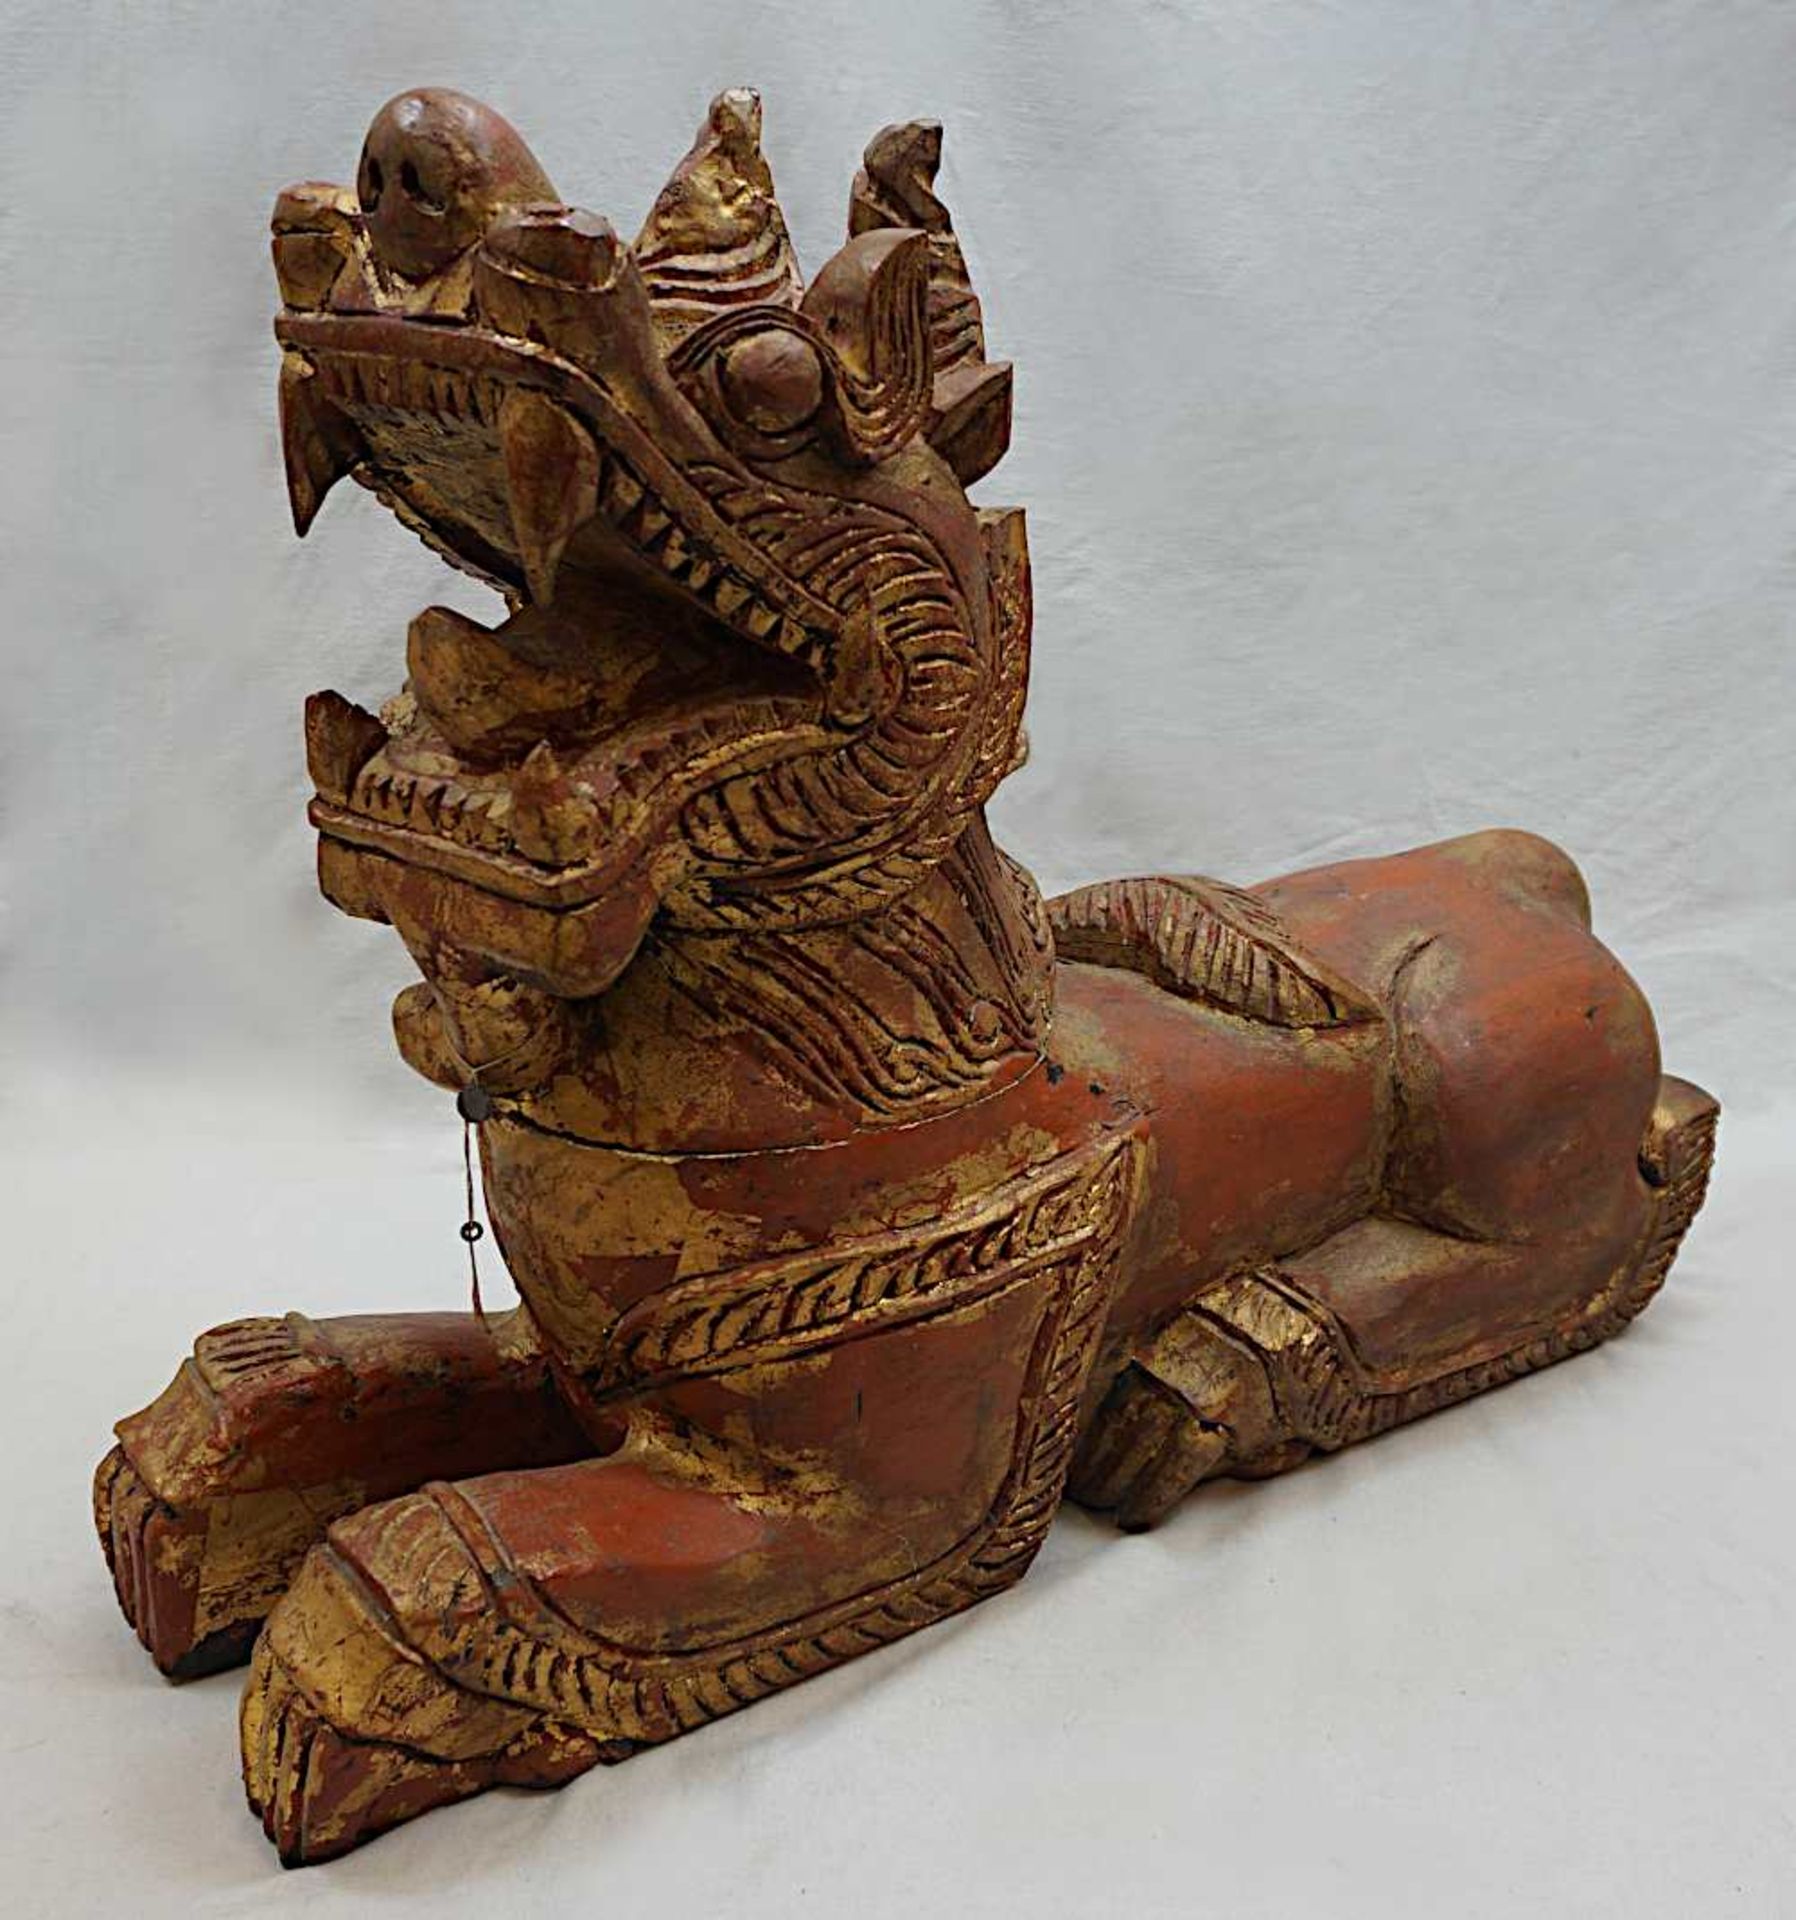 1 Holzfigur 20. Jh. "Asiatischer Tempeldrache" rot/gold bemalt, ca. 55x69x21cm, besch. - Bild 2 aus 5